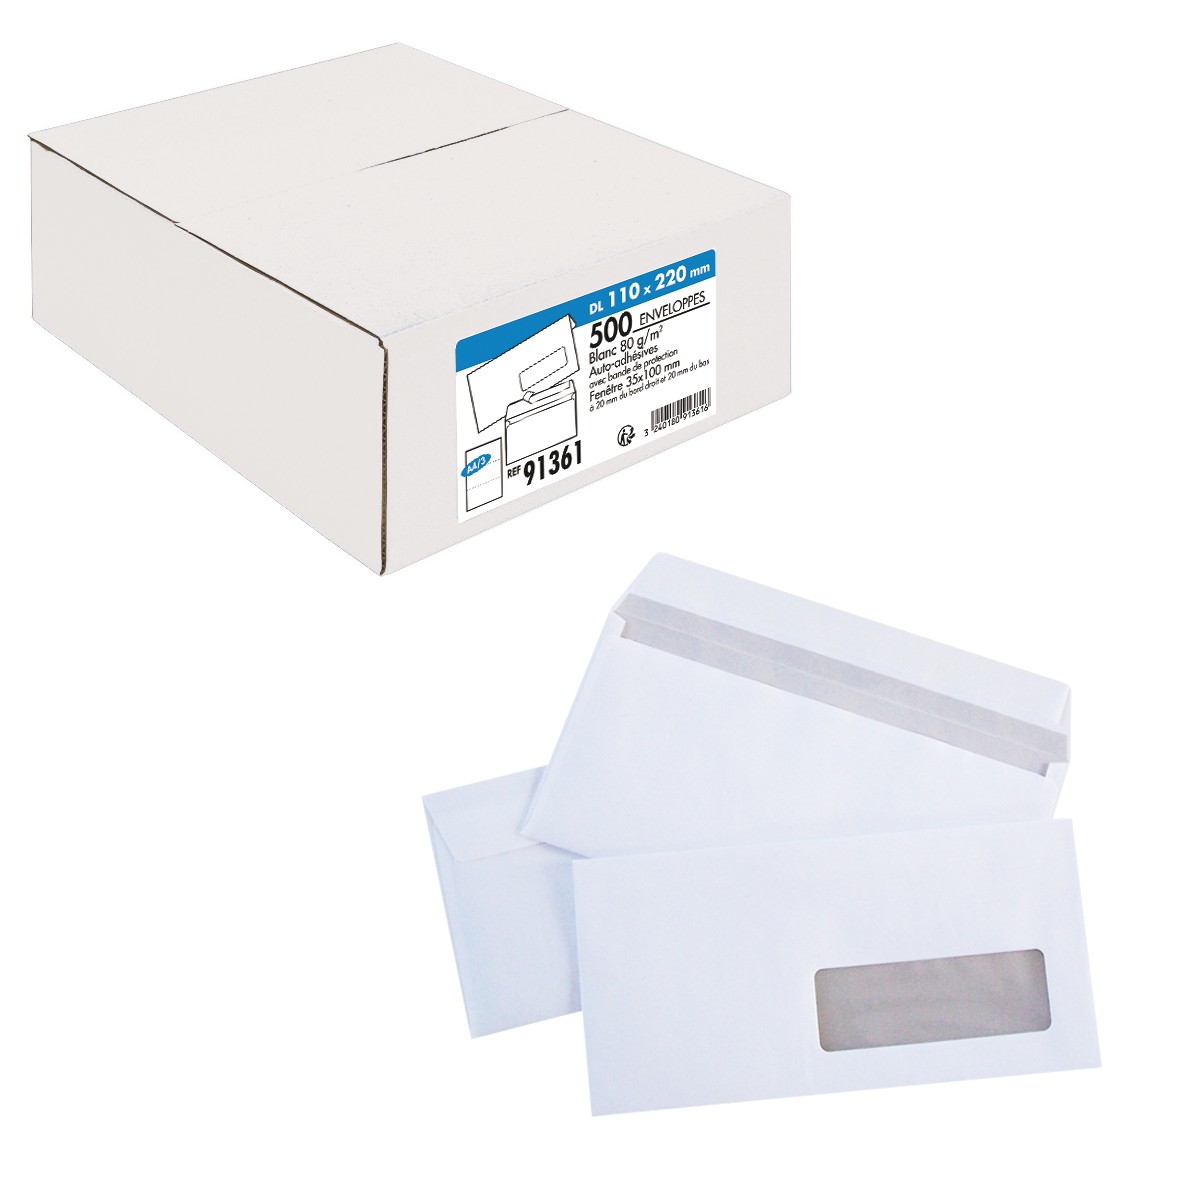 La Couronne - 500 Enveloppes DL 110 x 220 mm - 80 gr - fenêtre 35x100 mm - blanc - bande auto-adhésive